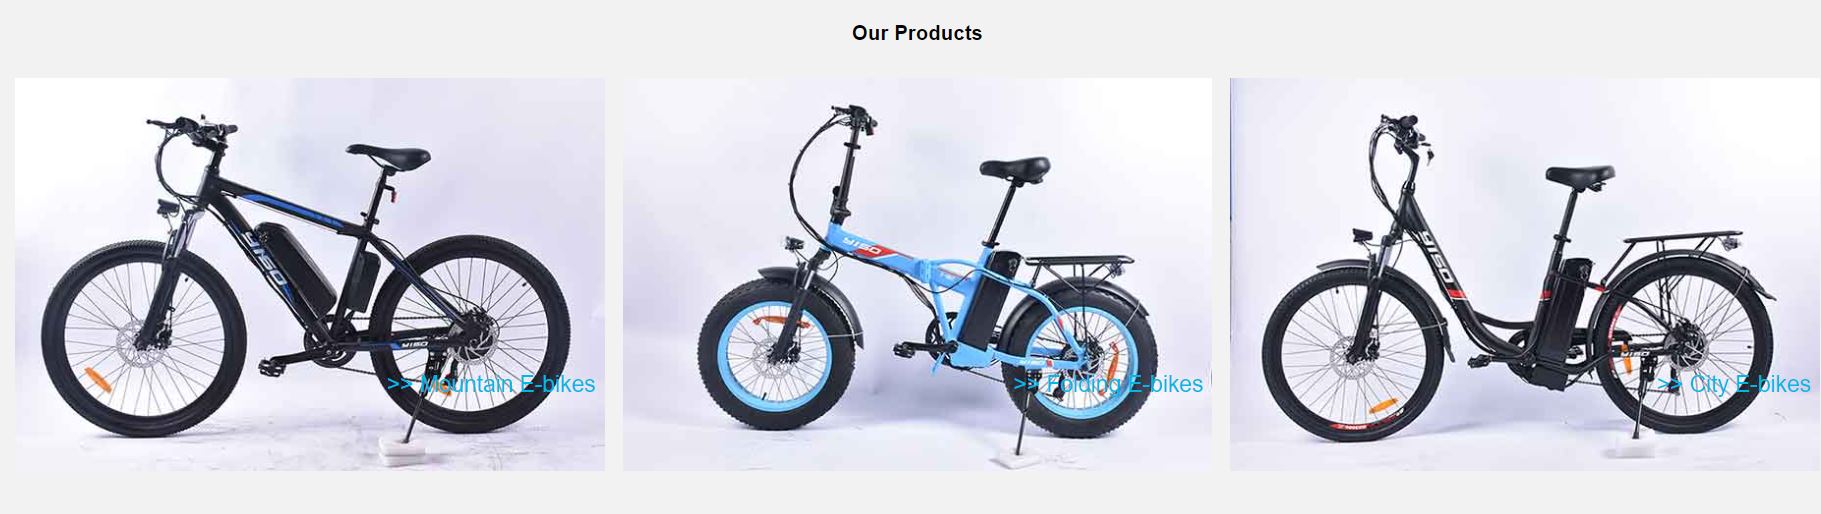 Quatre types différents de vélos électriques fabriqués par un fabricant de VAE sont présentés.